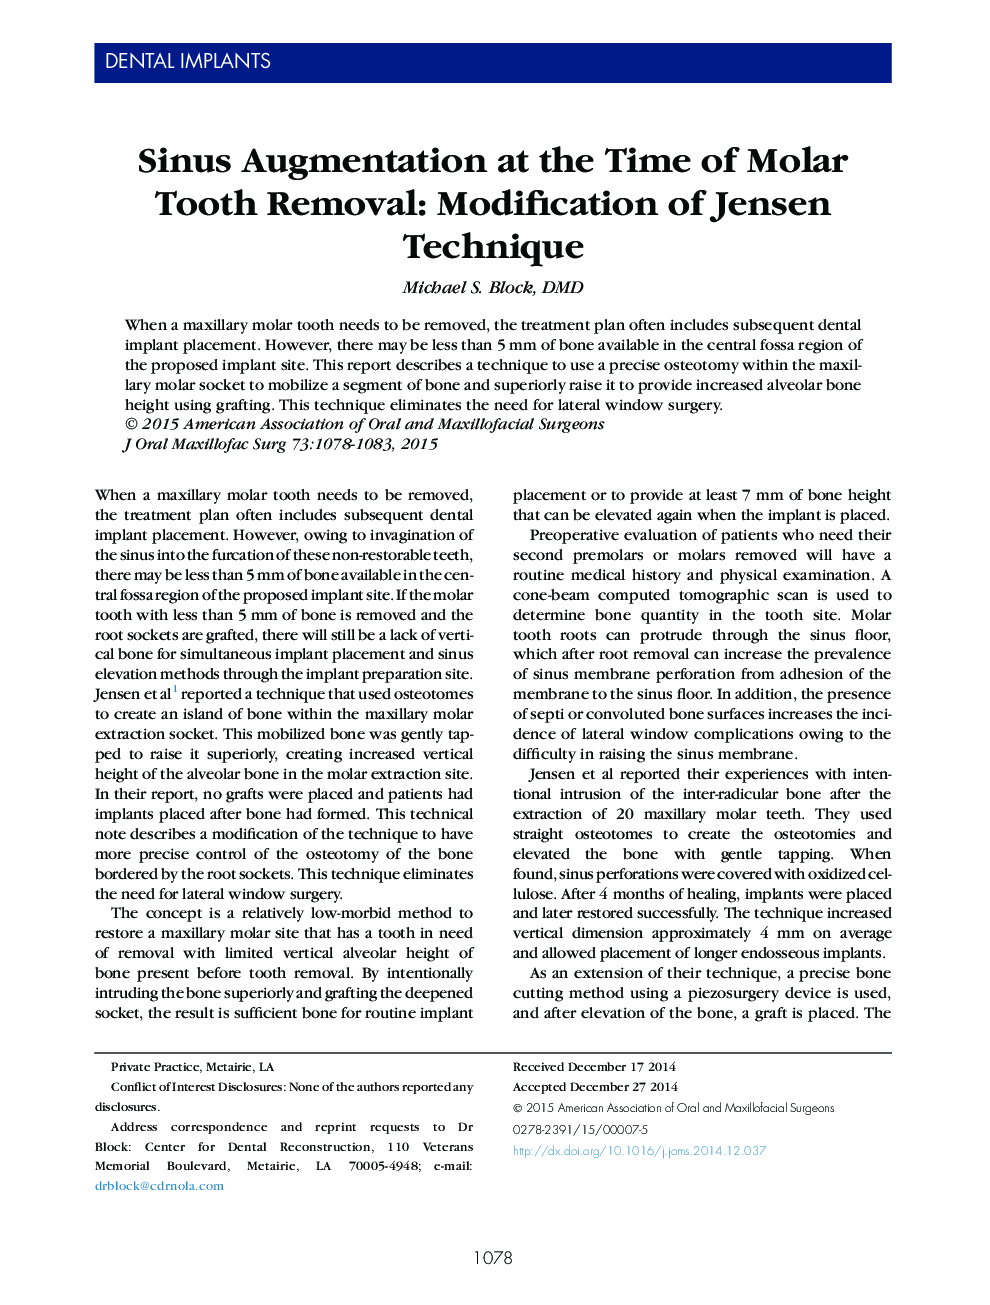 افزایش سینوسی در زمان برداشتن دندان مولر: اصلاح تکنیک جانسن 